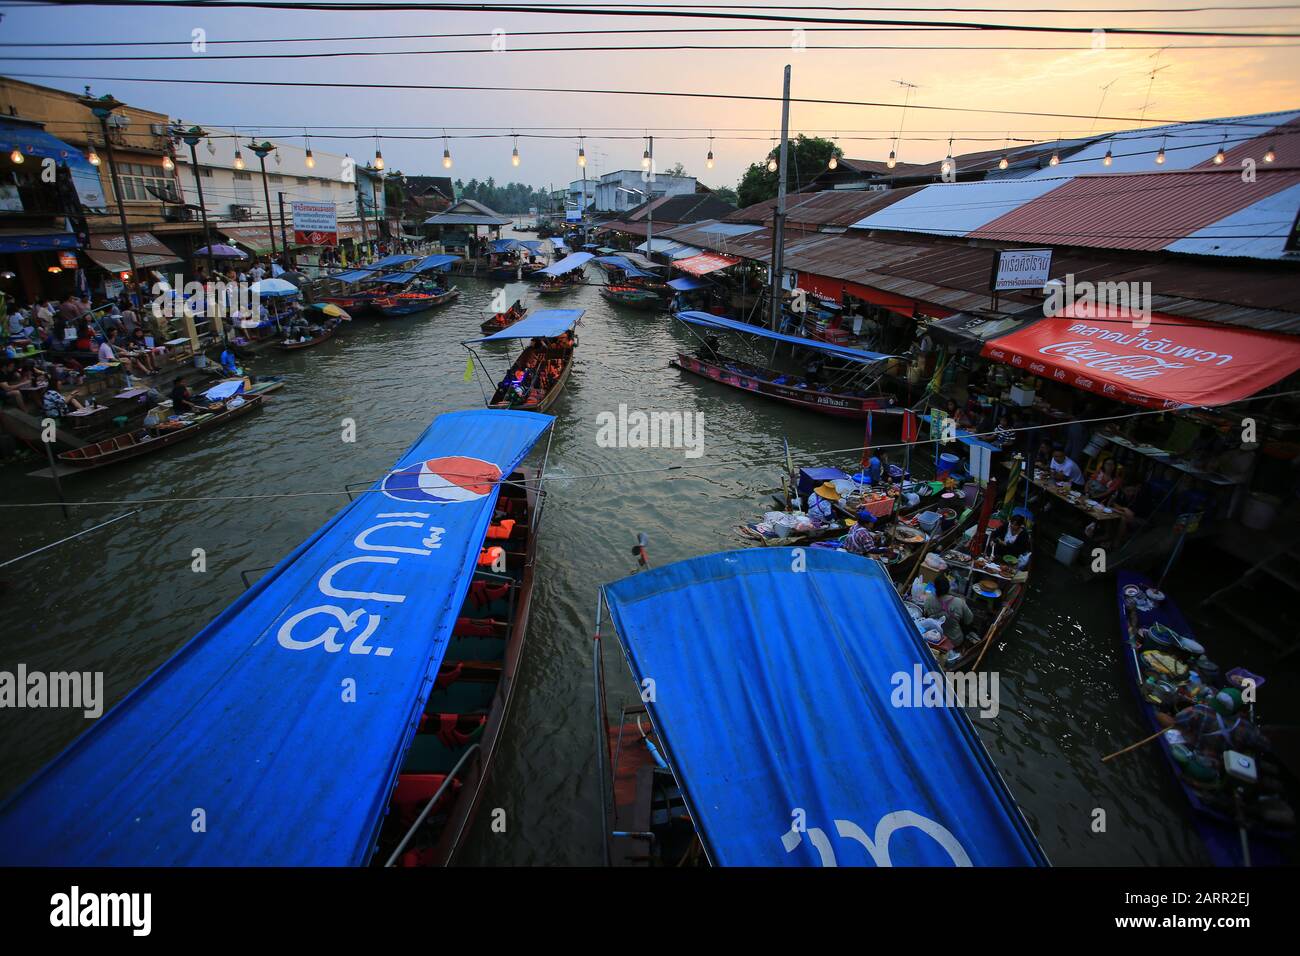 Bangkok/Thailand, 29. Dezember 2019 - Thailänder verkaufen Lebensmittel an Touristen auf dem schwimmenden Markt Amphawa, die Tourismusbranche ist die wichtigste Wirtschaftsbranche i. Stockfoto